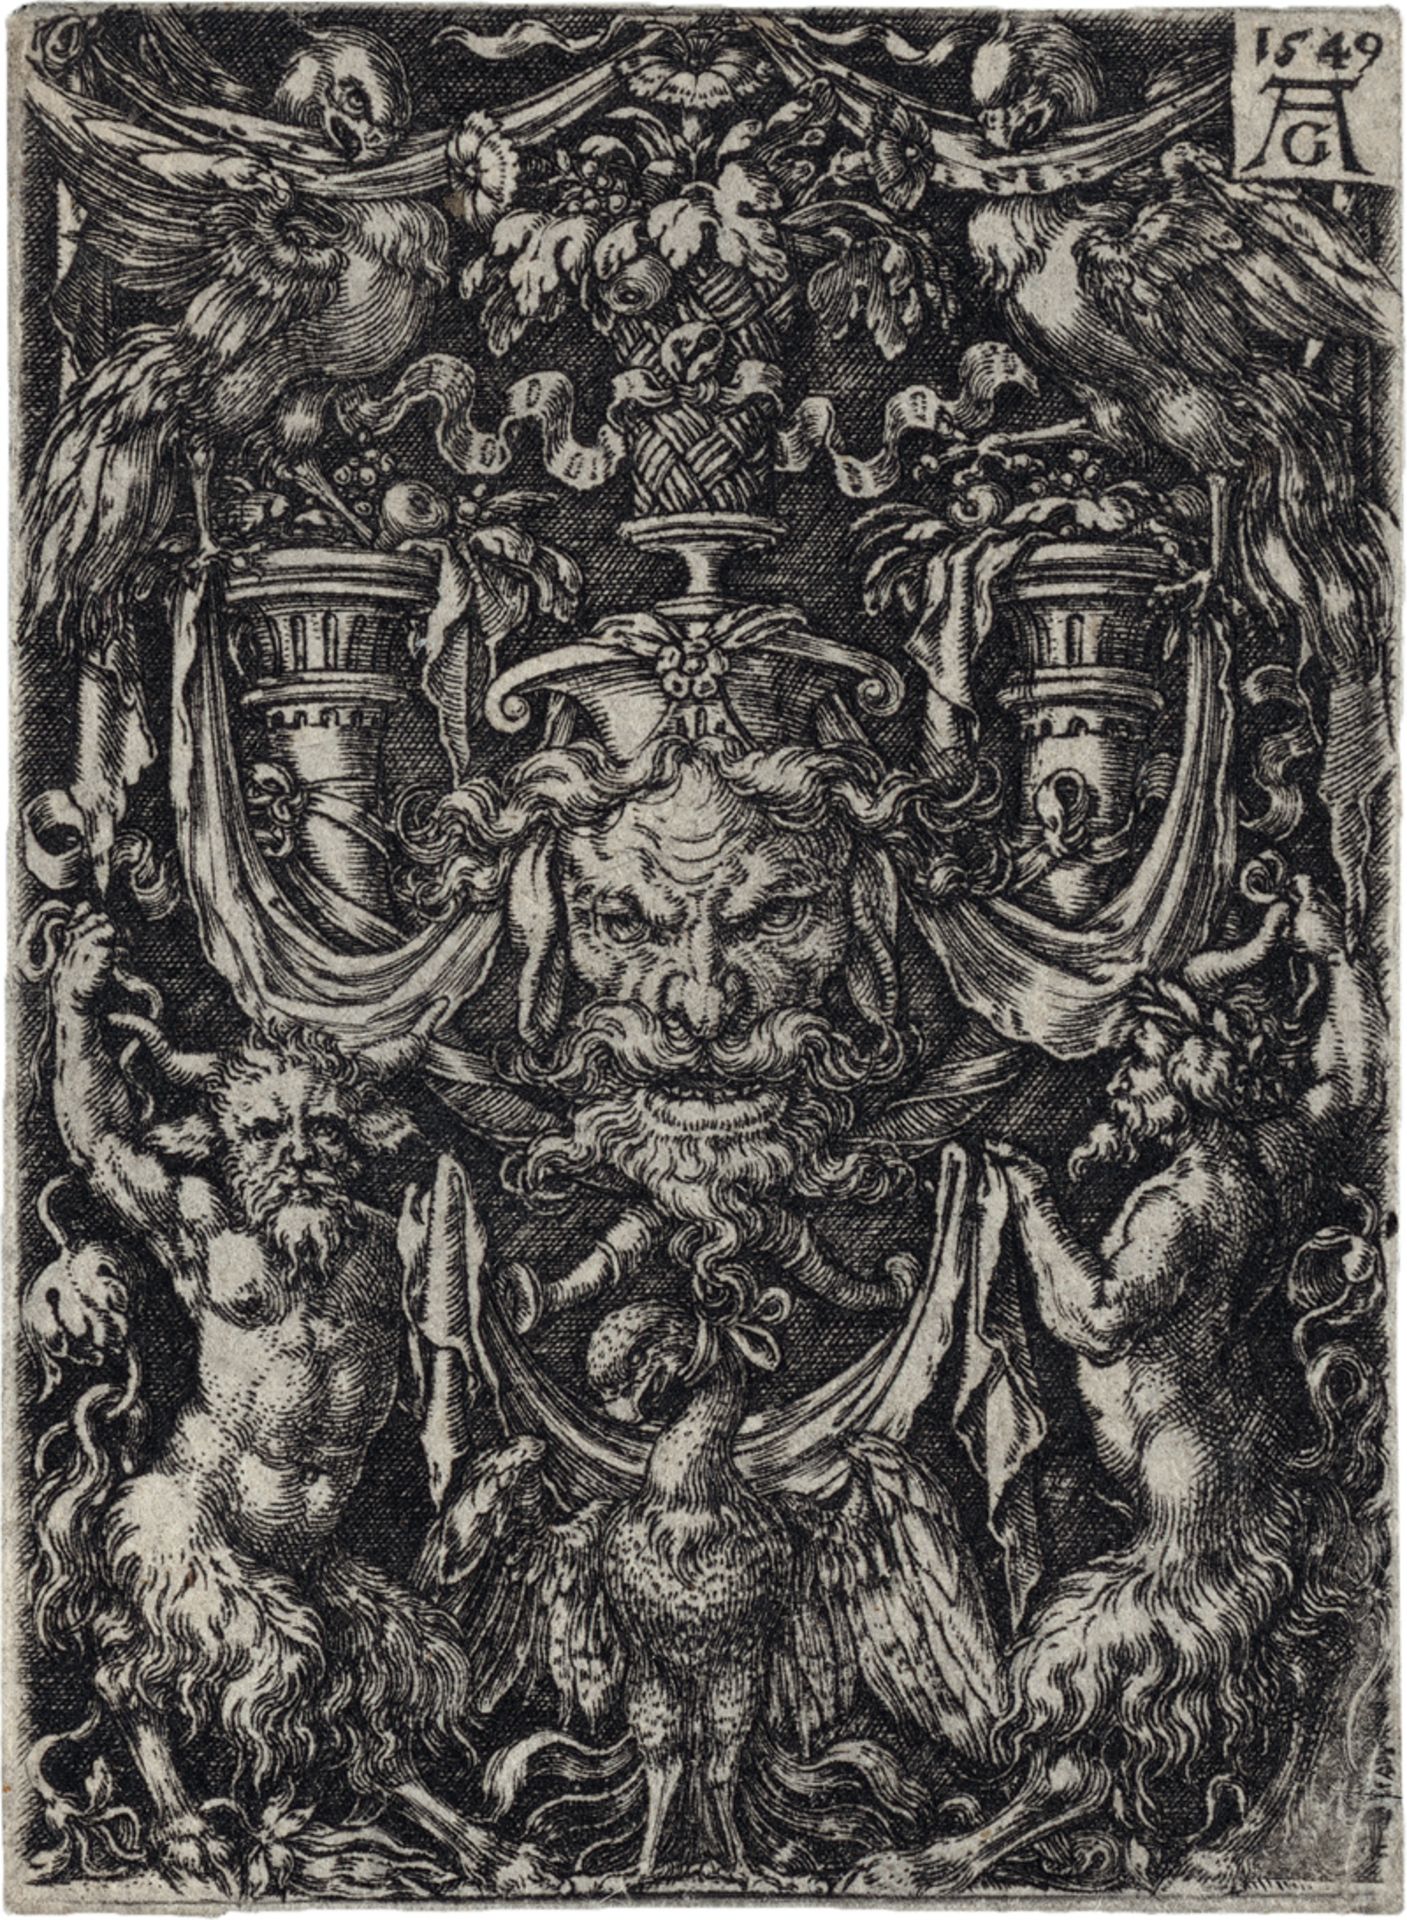 Aldegrever, Heinrich: Ornamententwurf mit Maske und Adler zwischen zwei Faunen